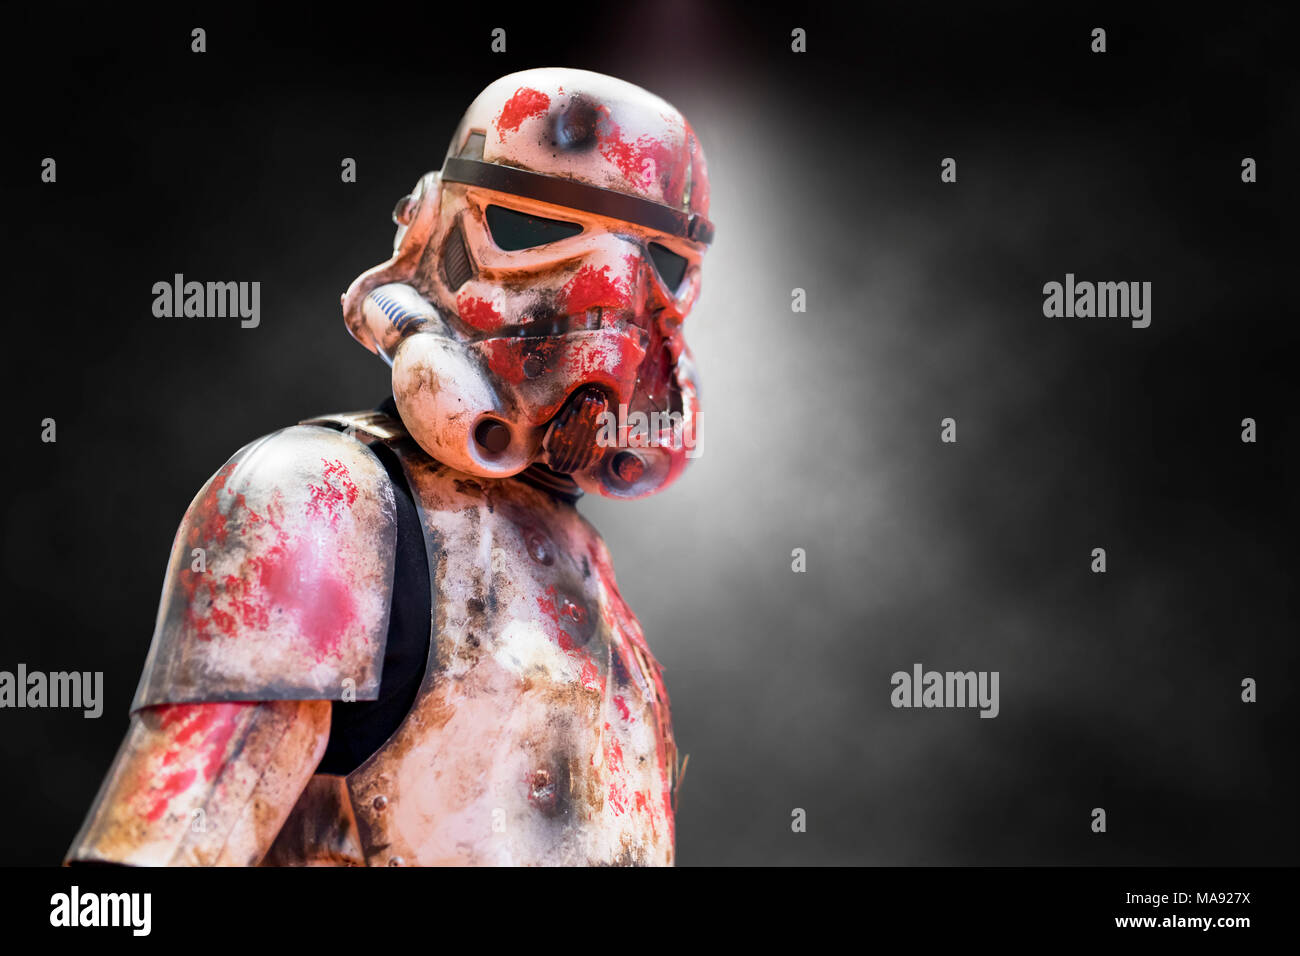 Birmingham, Großbritannien - 17 März, 2018. Ein cosplayer gekleidet wie eine ramponierte, blutig und vom Krieg zerrissenen Storm Trooper Kostüm aus Star Wars Filmen zu einem Comic Con i Stockfoto